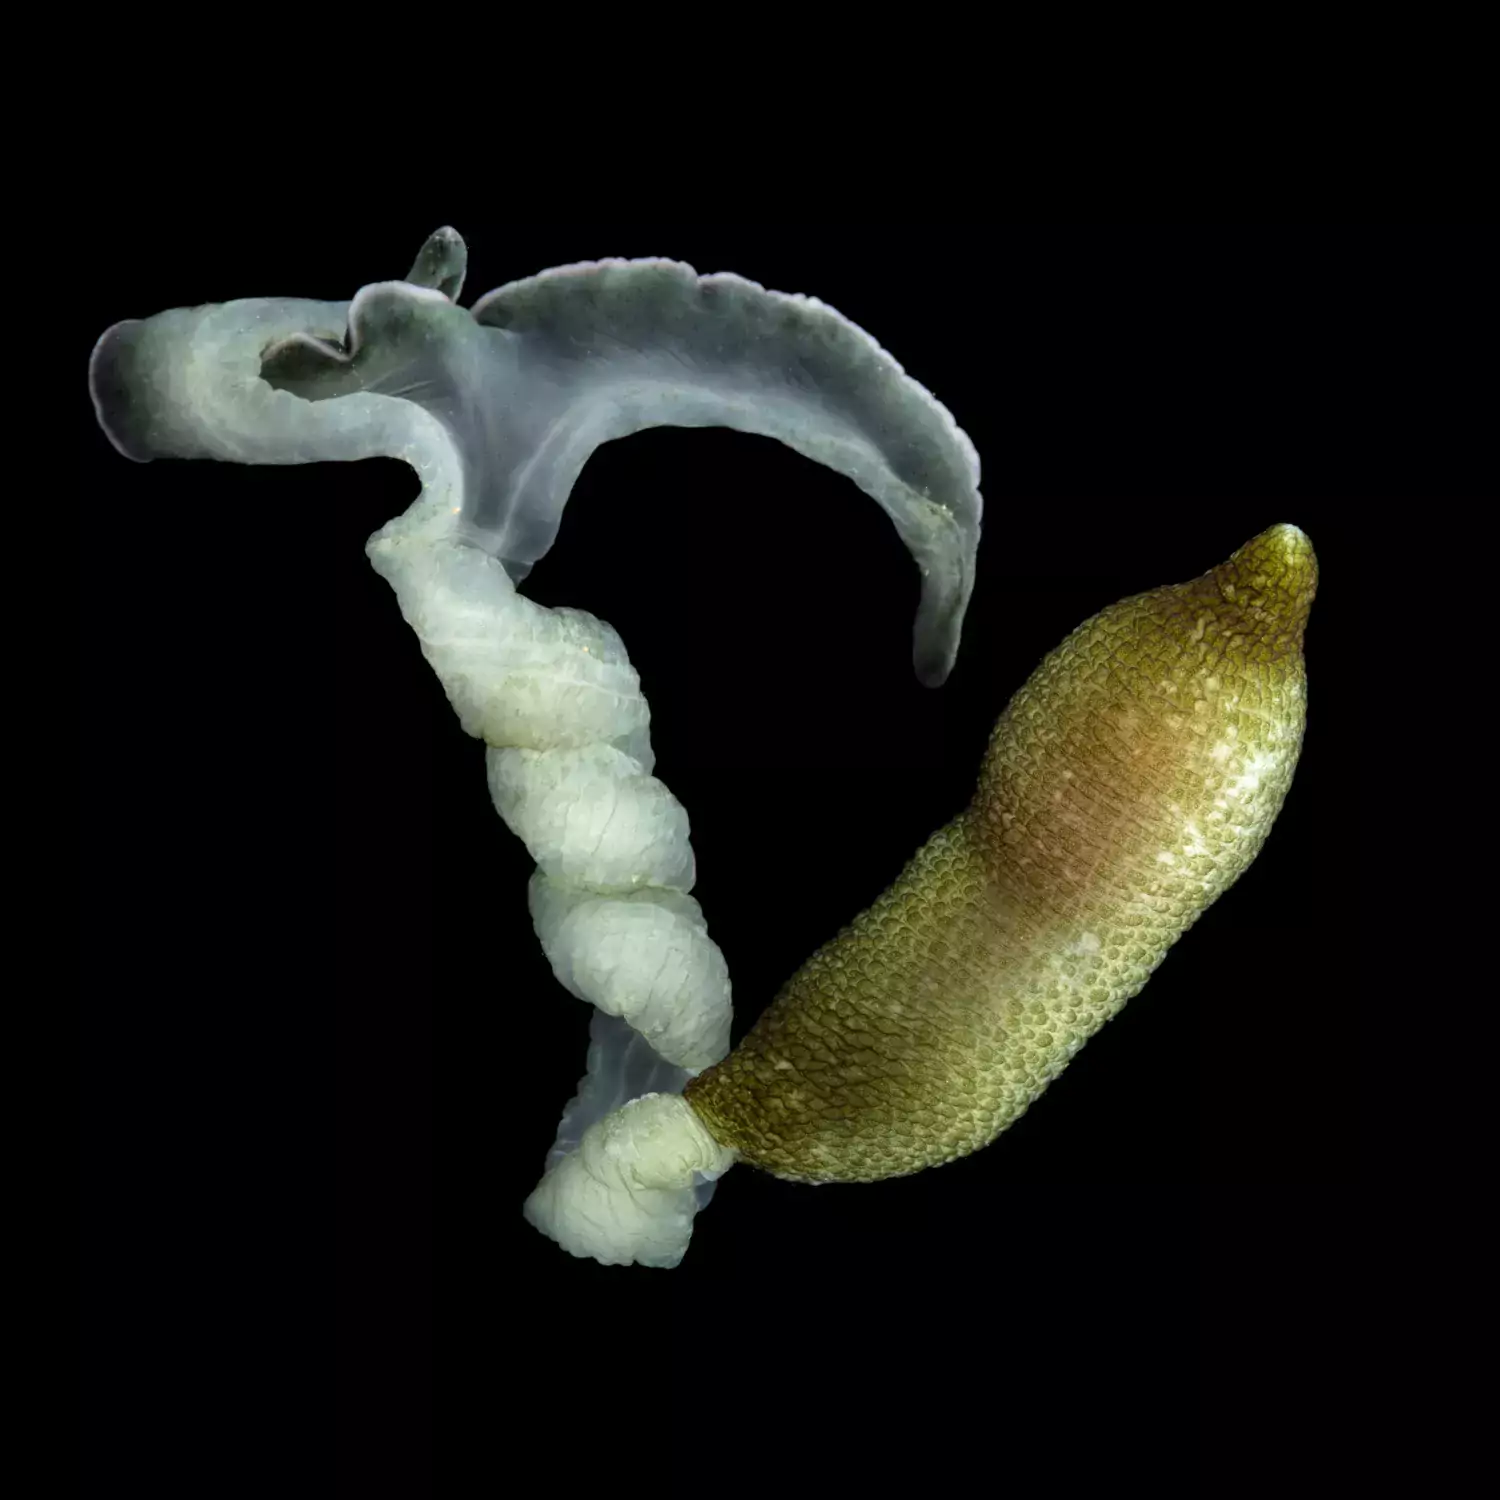 Fotografi av Bonellia viridis Bonellia viridis (svenskt namn saknas) är en egenartad mask och det är först på senare år som man förstått att de är modifierade havsborstmaskar. På bilden syns en hona, cirka 50 cm lång i utsträckt skick.